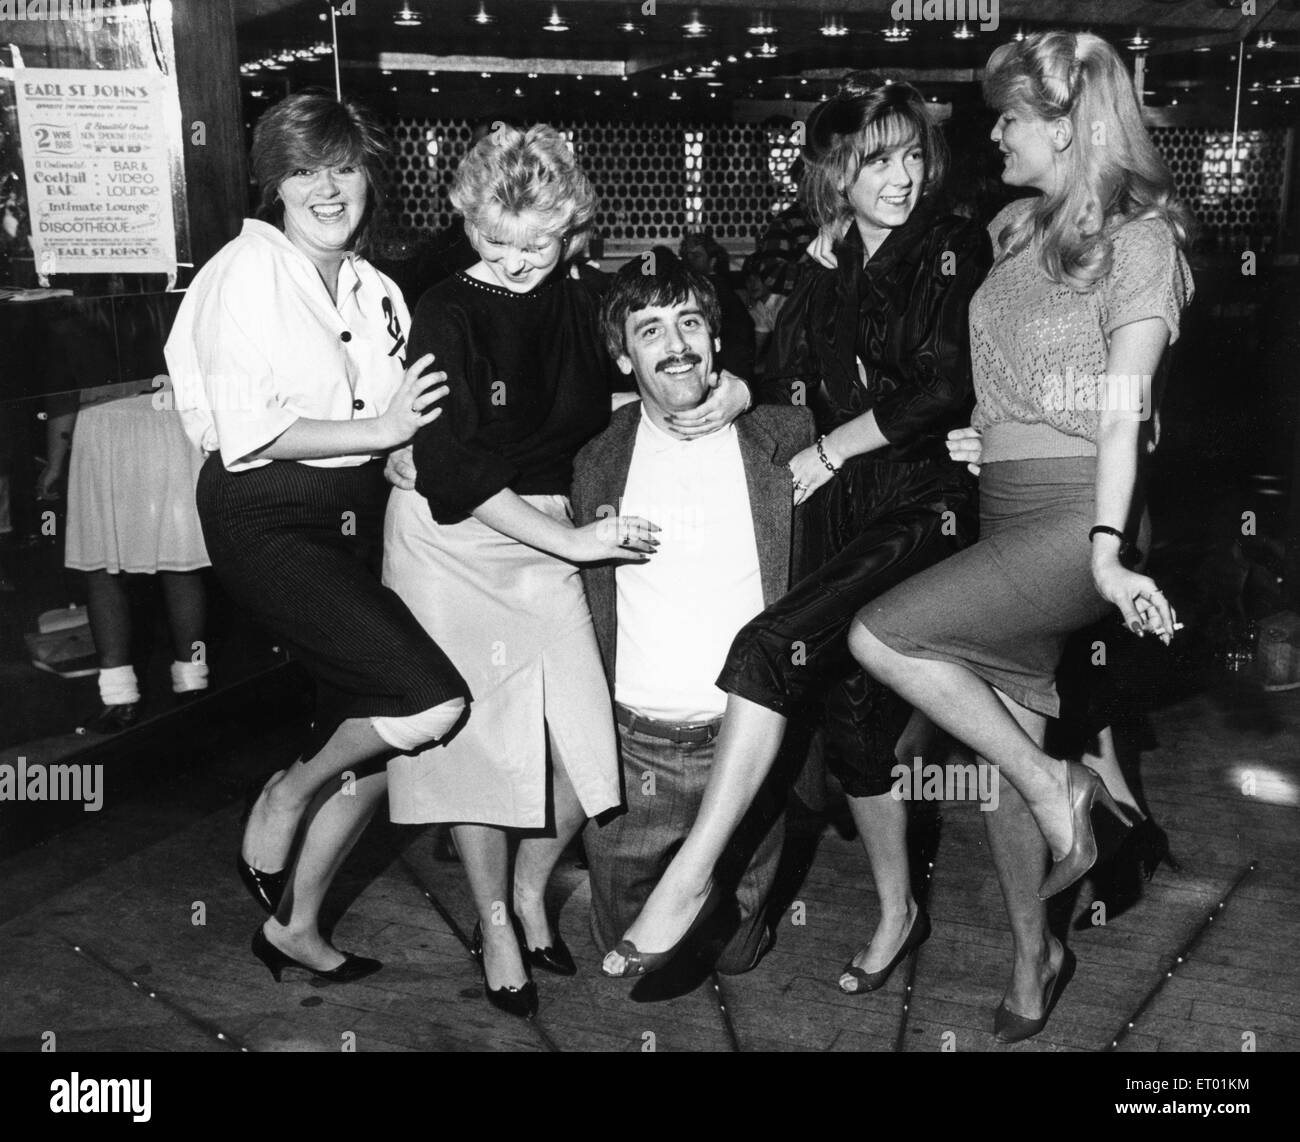 Funtime al Earl St John Rockfords disci debajo del bar de vinos. El 27 de octubre de 1984 Foto de stock